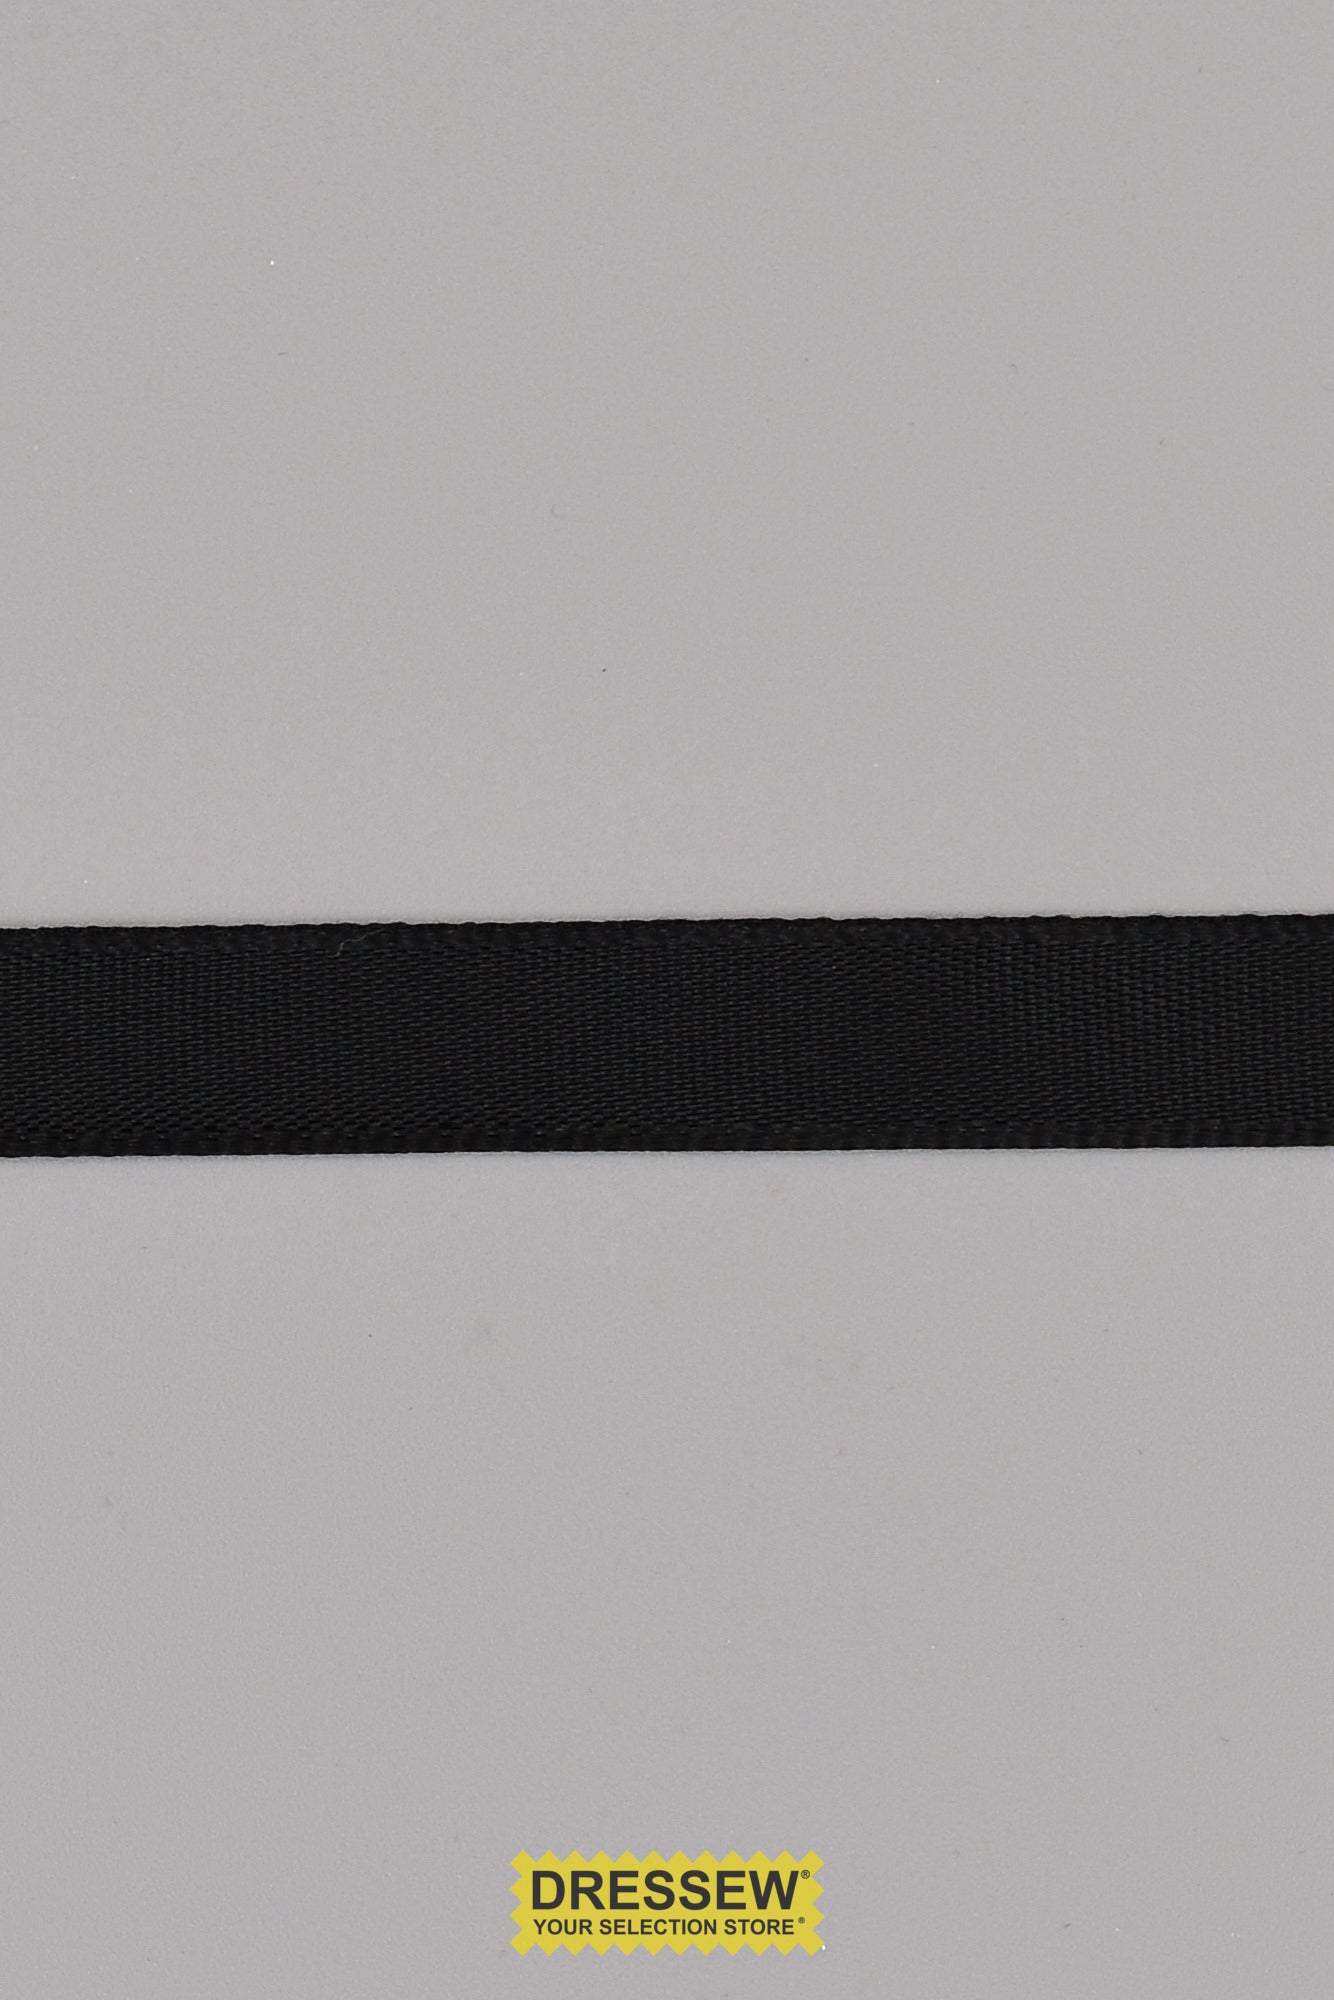 Single Face Satin Ribbon 9mm (3/8") Black